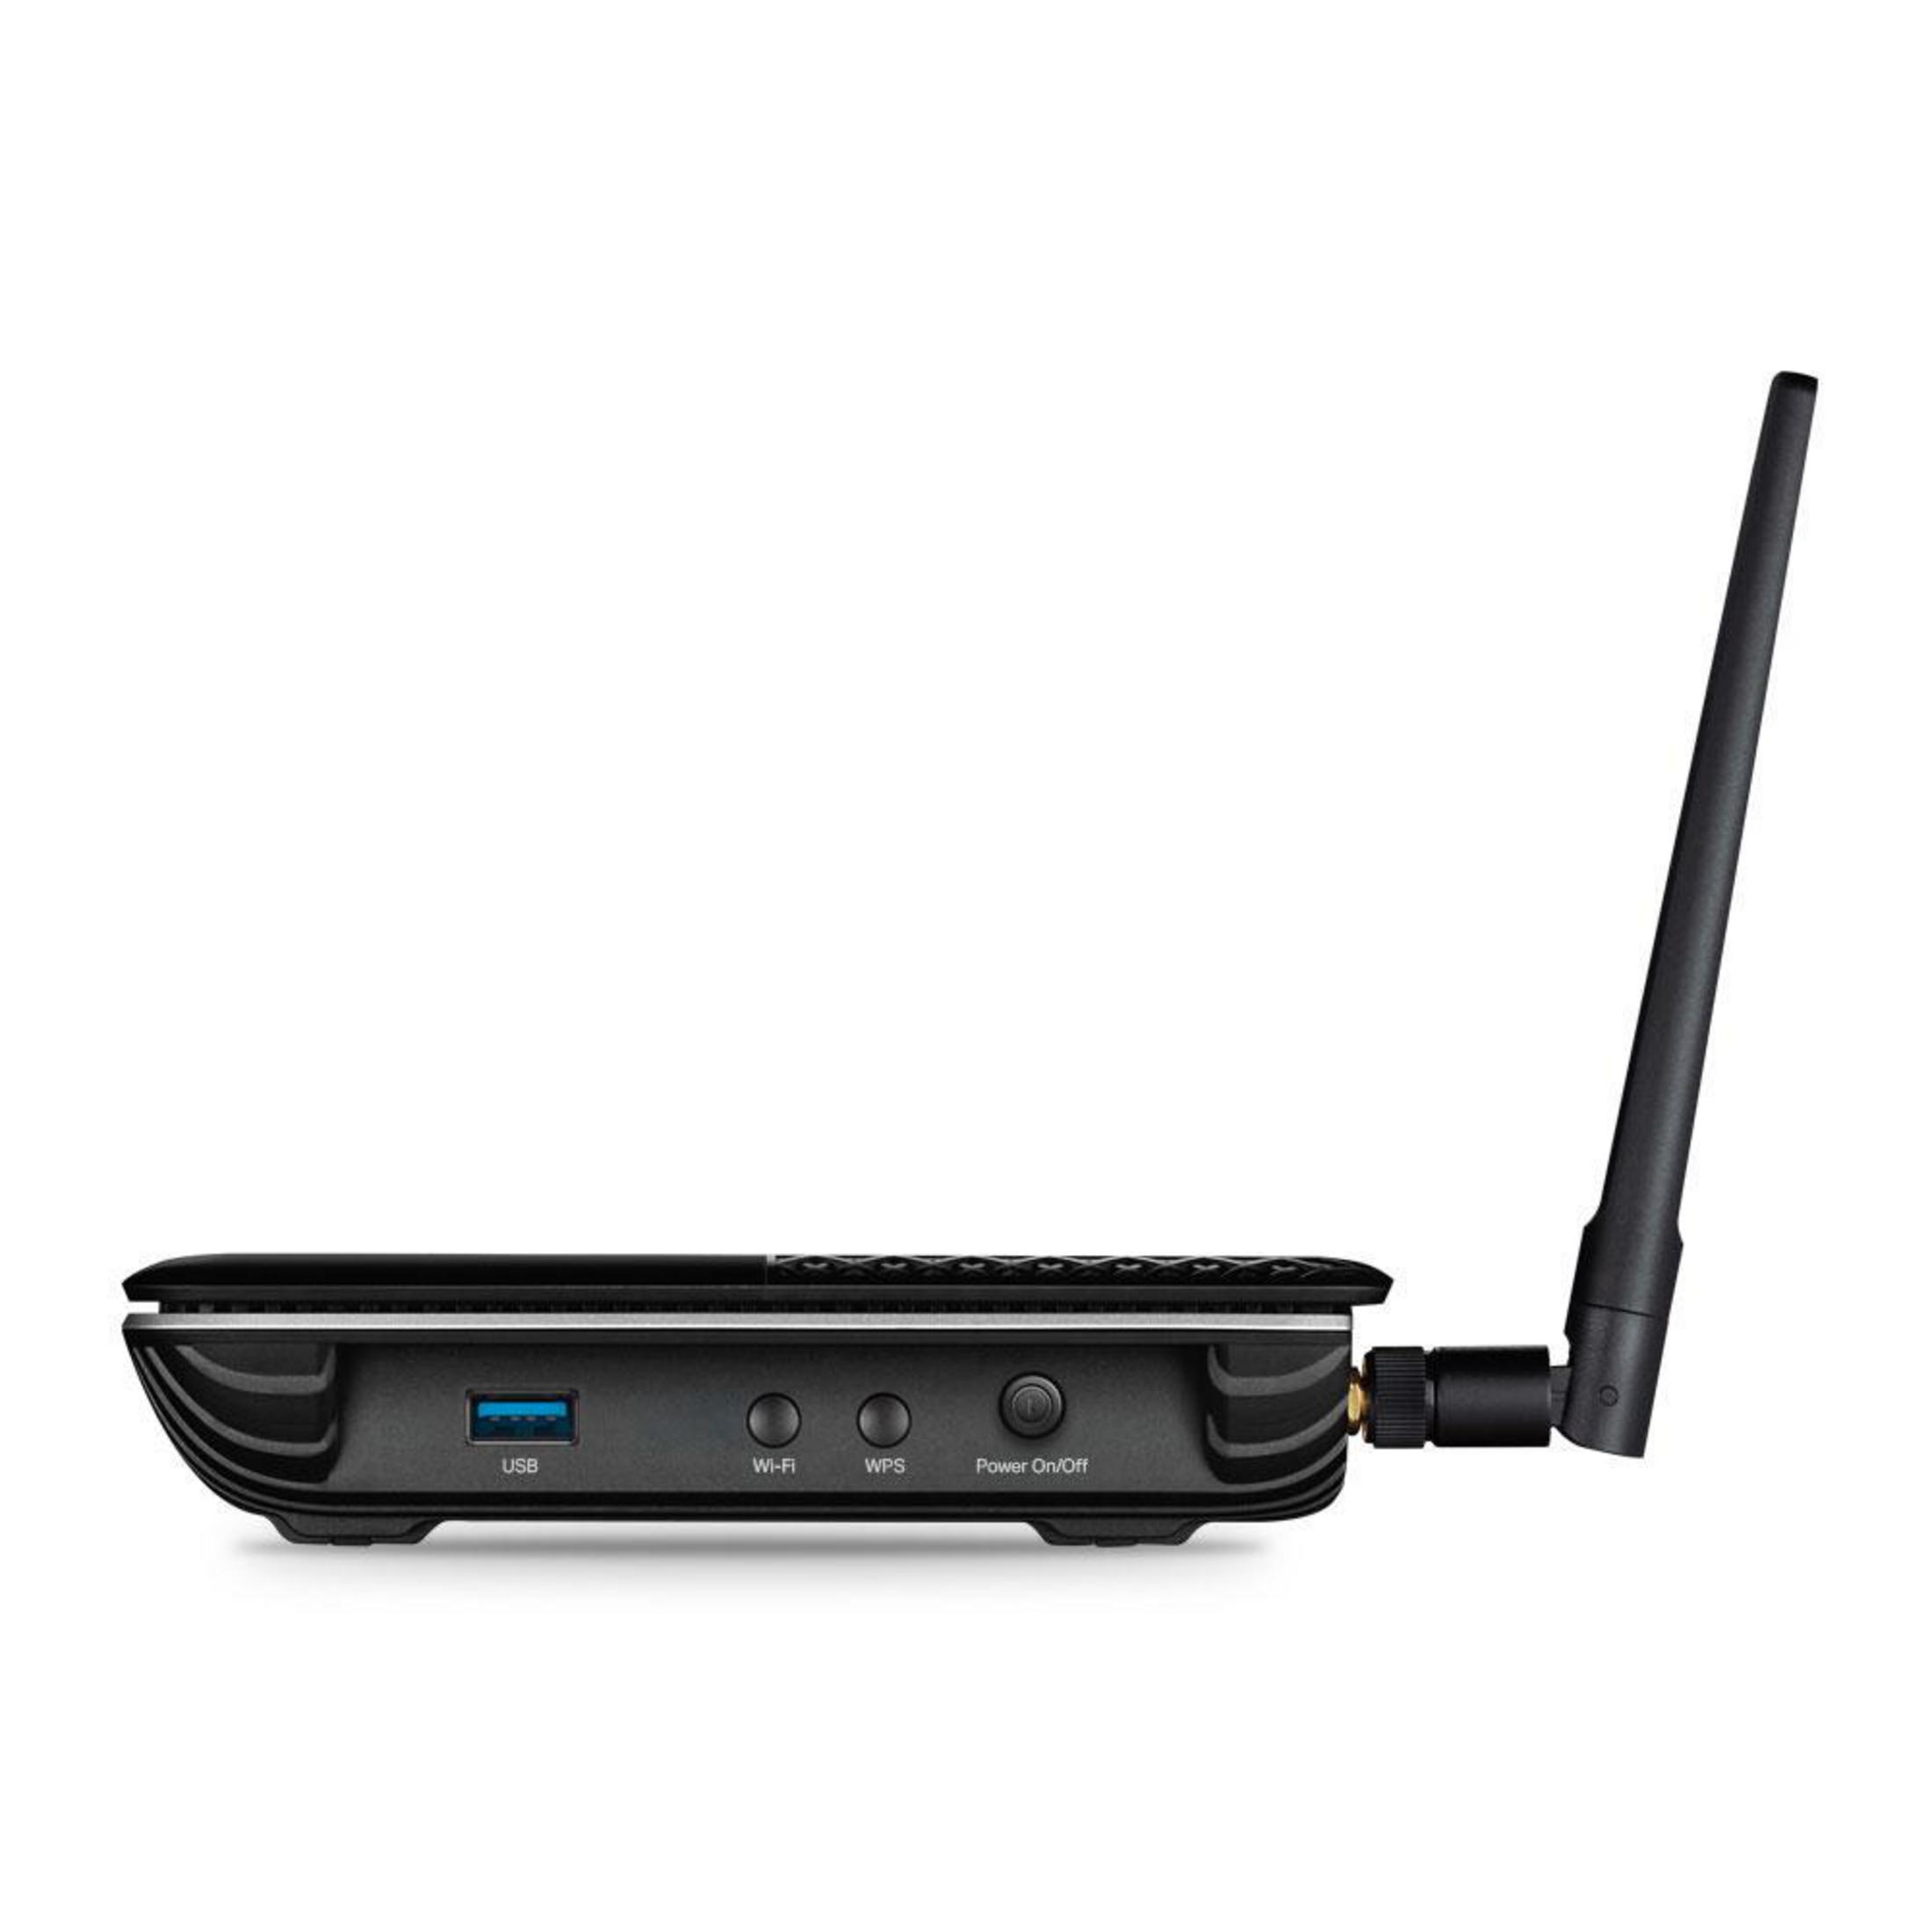 Mbit/s ARCHER Router 1600 VR600V(DE) TP-LINK